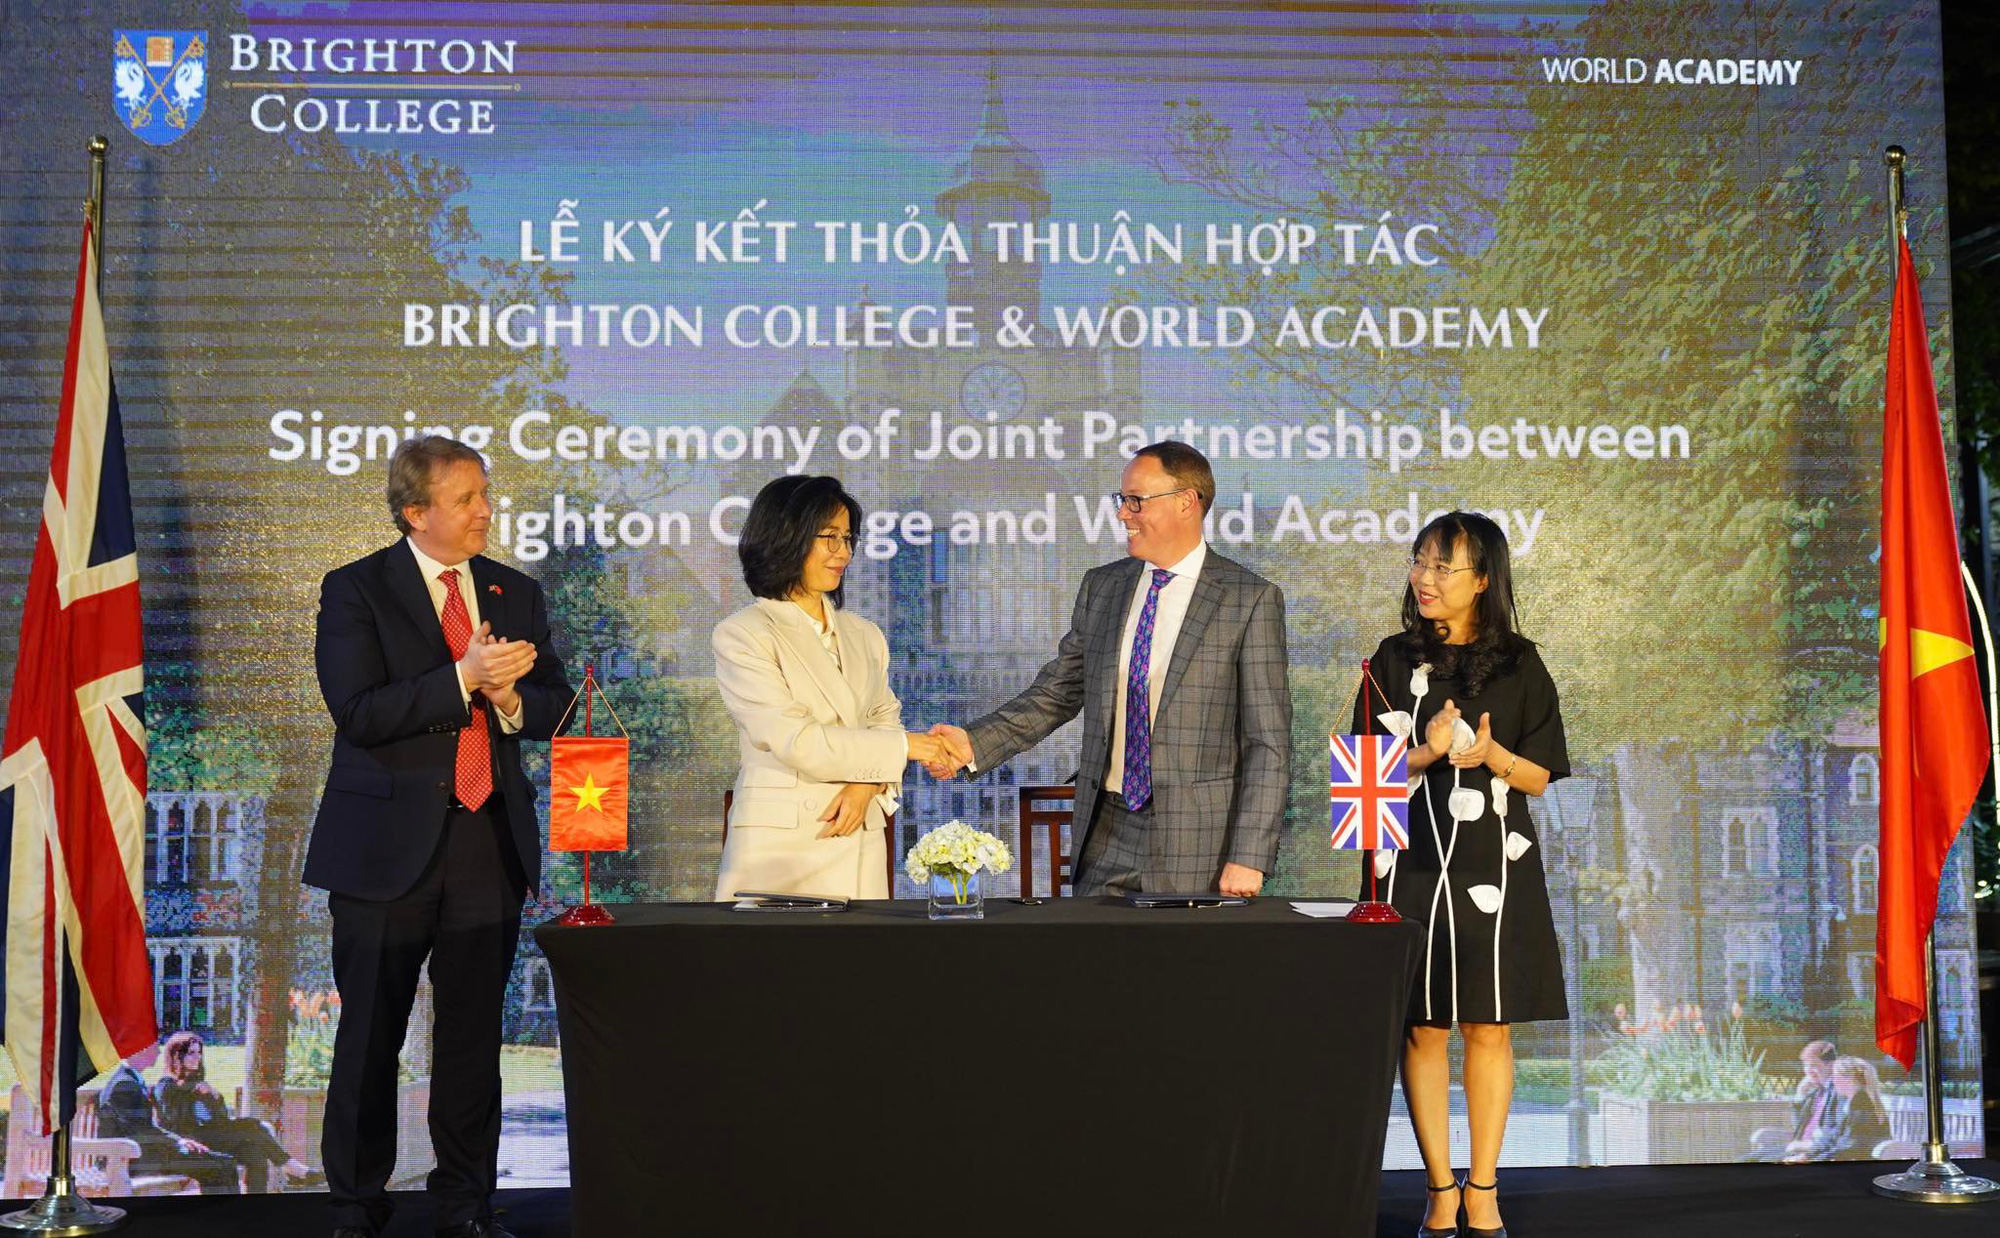 Vingroup hợp tác Brighton College mở rộng hệ thống trường quốc tế tại Việt Nam - Ảnh 1.